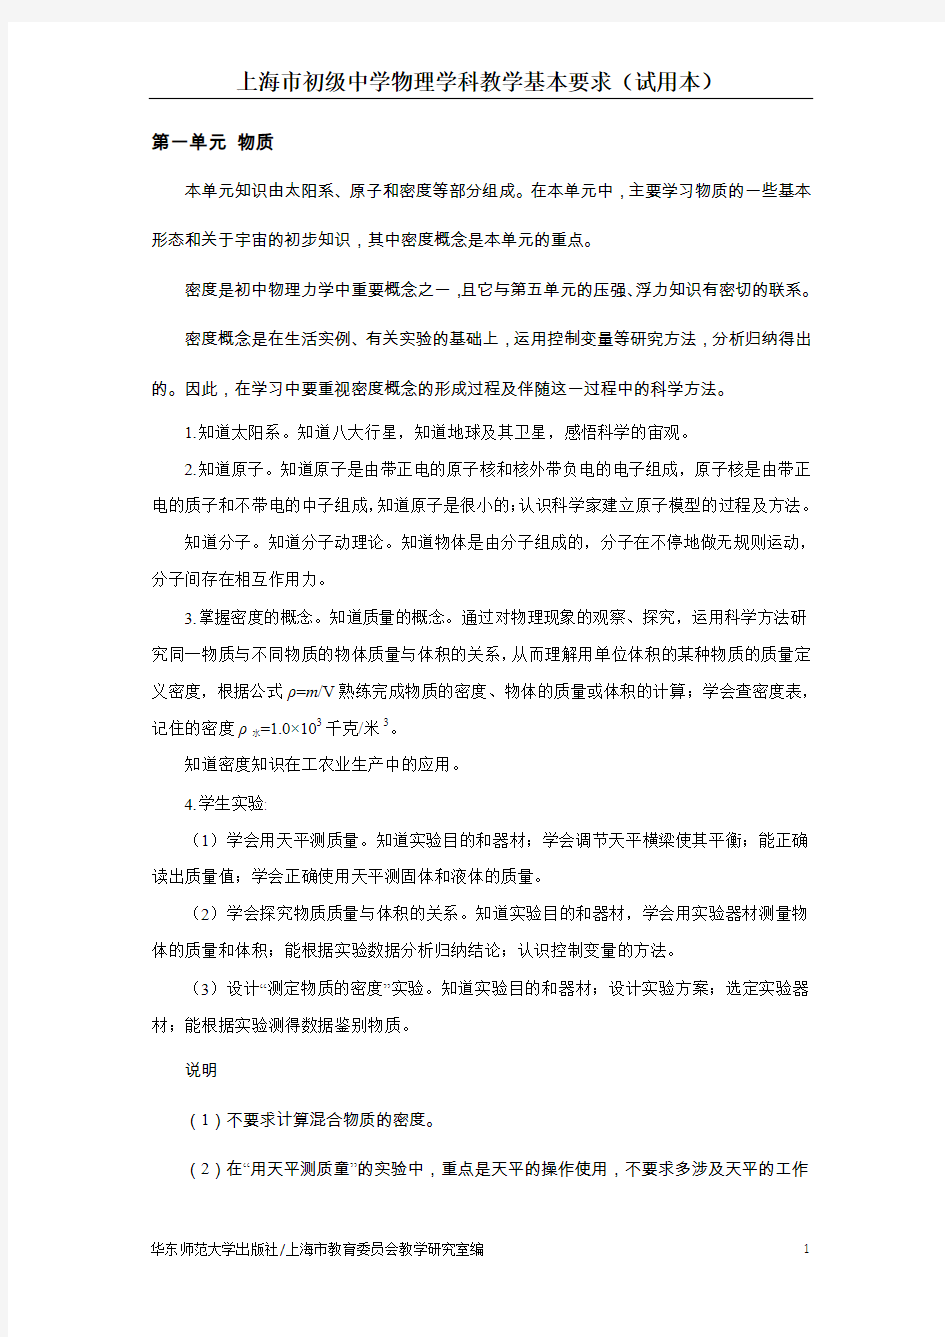 上海市初级中学物理学科教学基本要求(试用本)